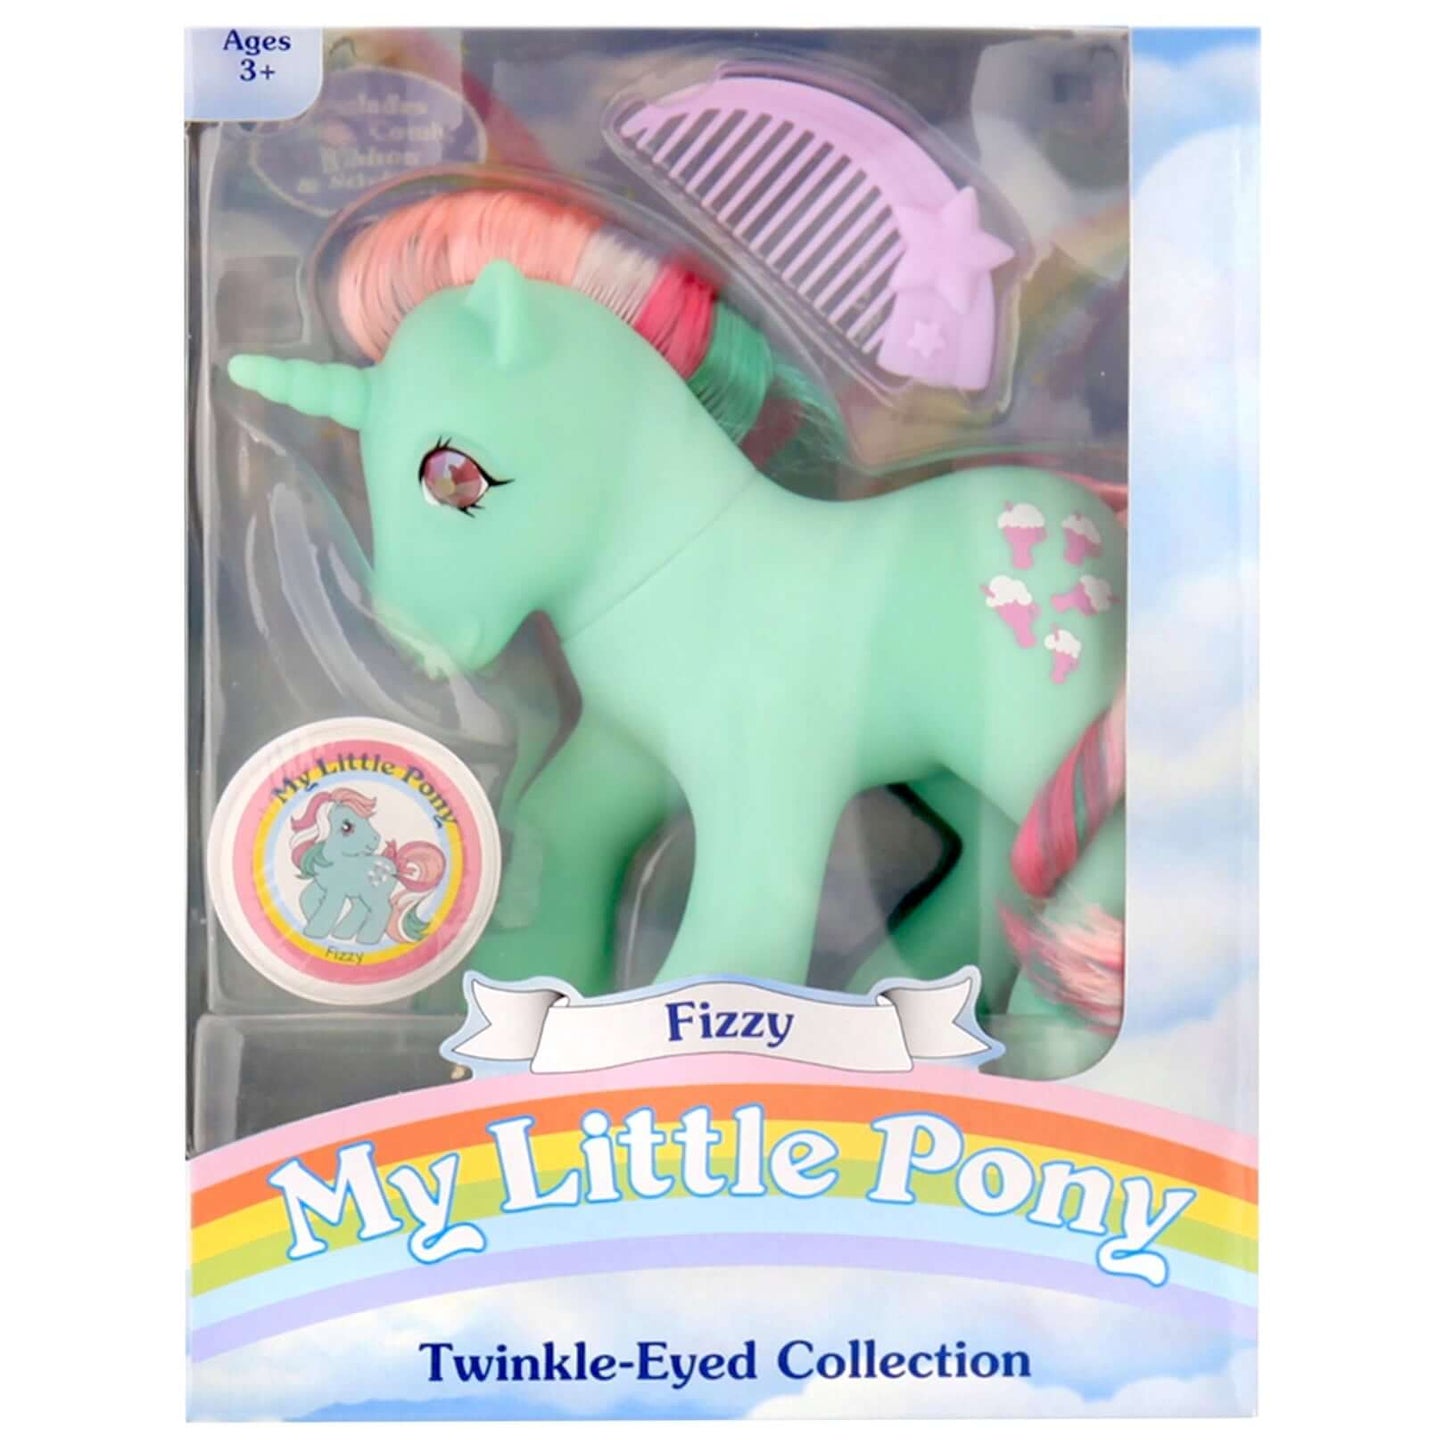 Basic Fun Classic Twinkle Eyed Pony - G1 Fizzy